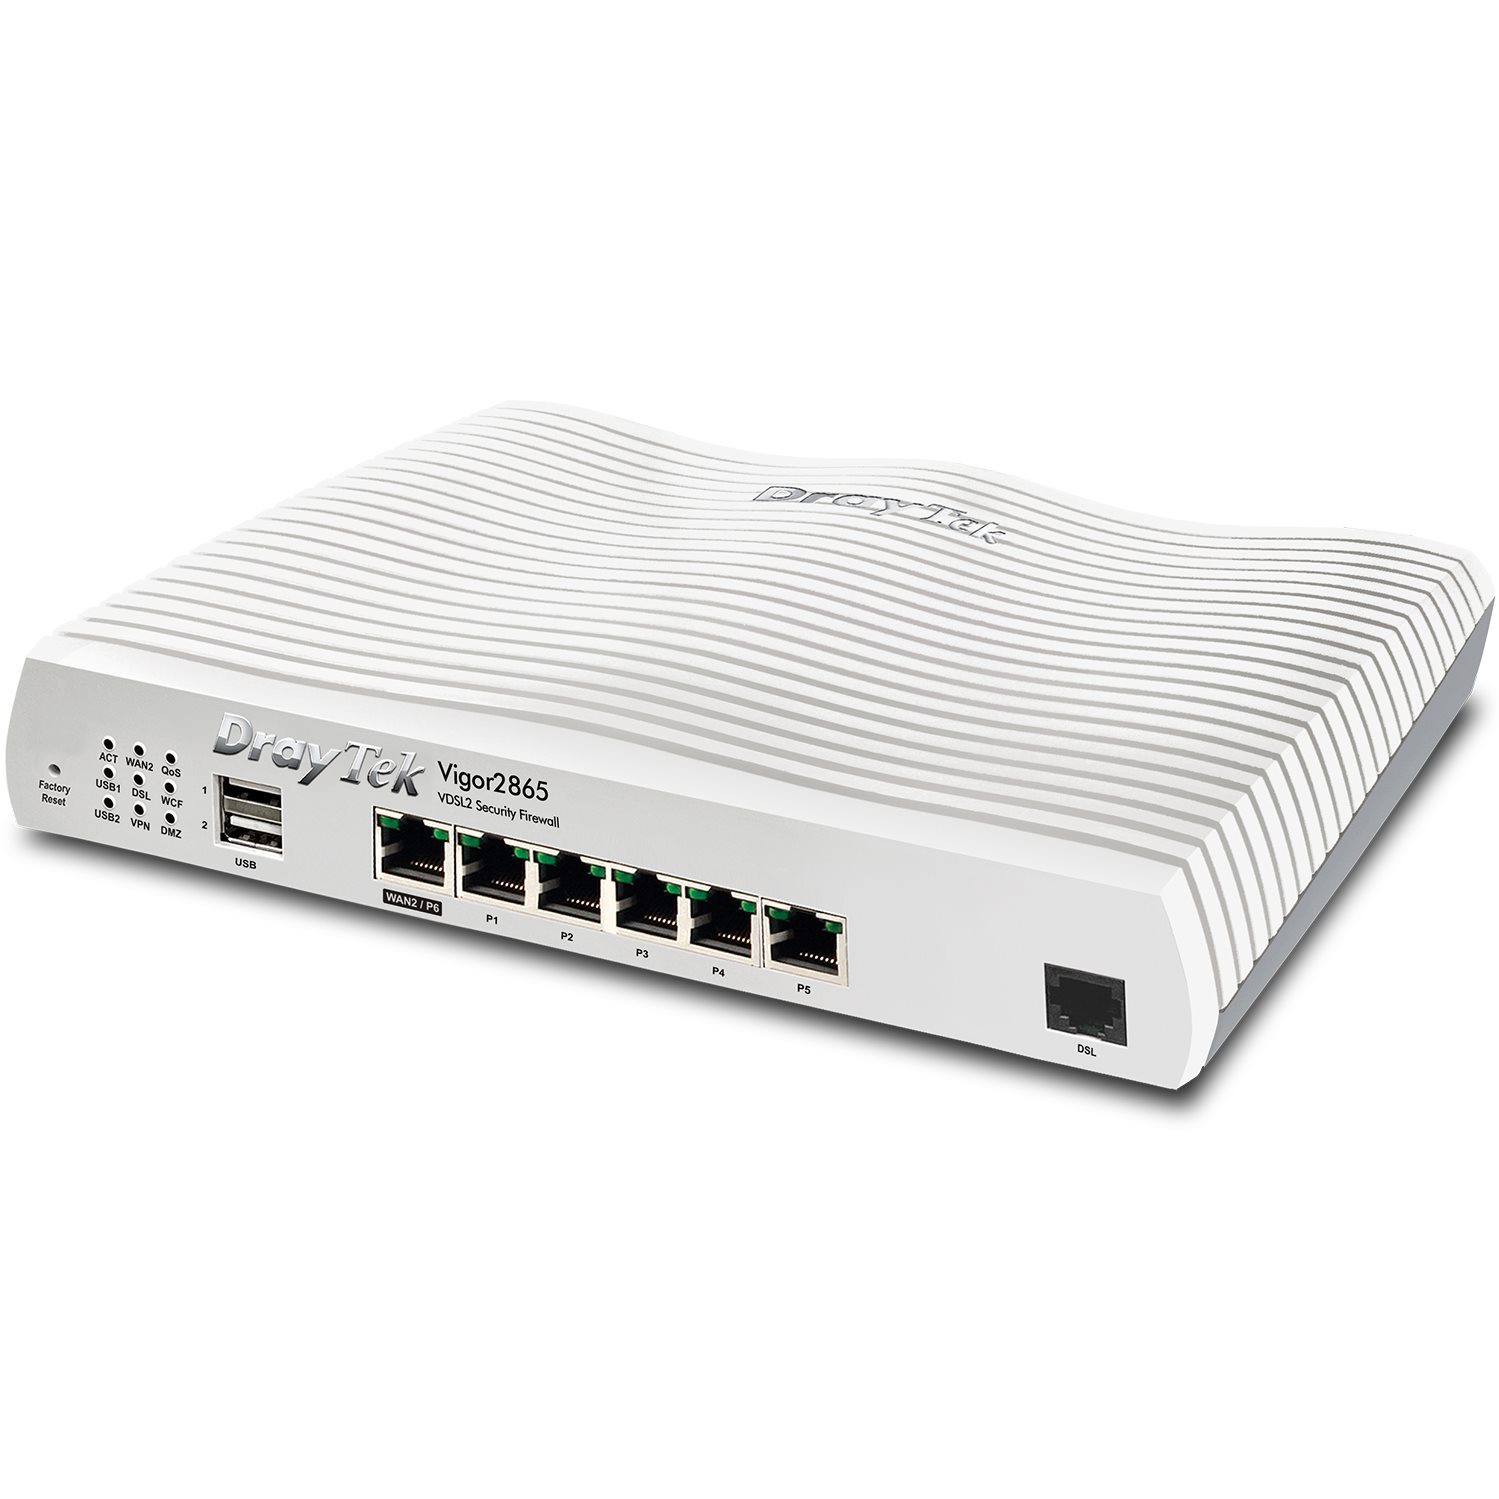   Routeurs Pro   Modem routeur multiwan Giga 32 VPN VIGOR2865